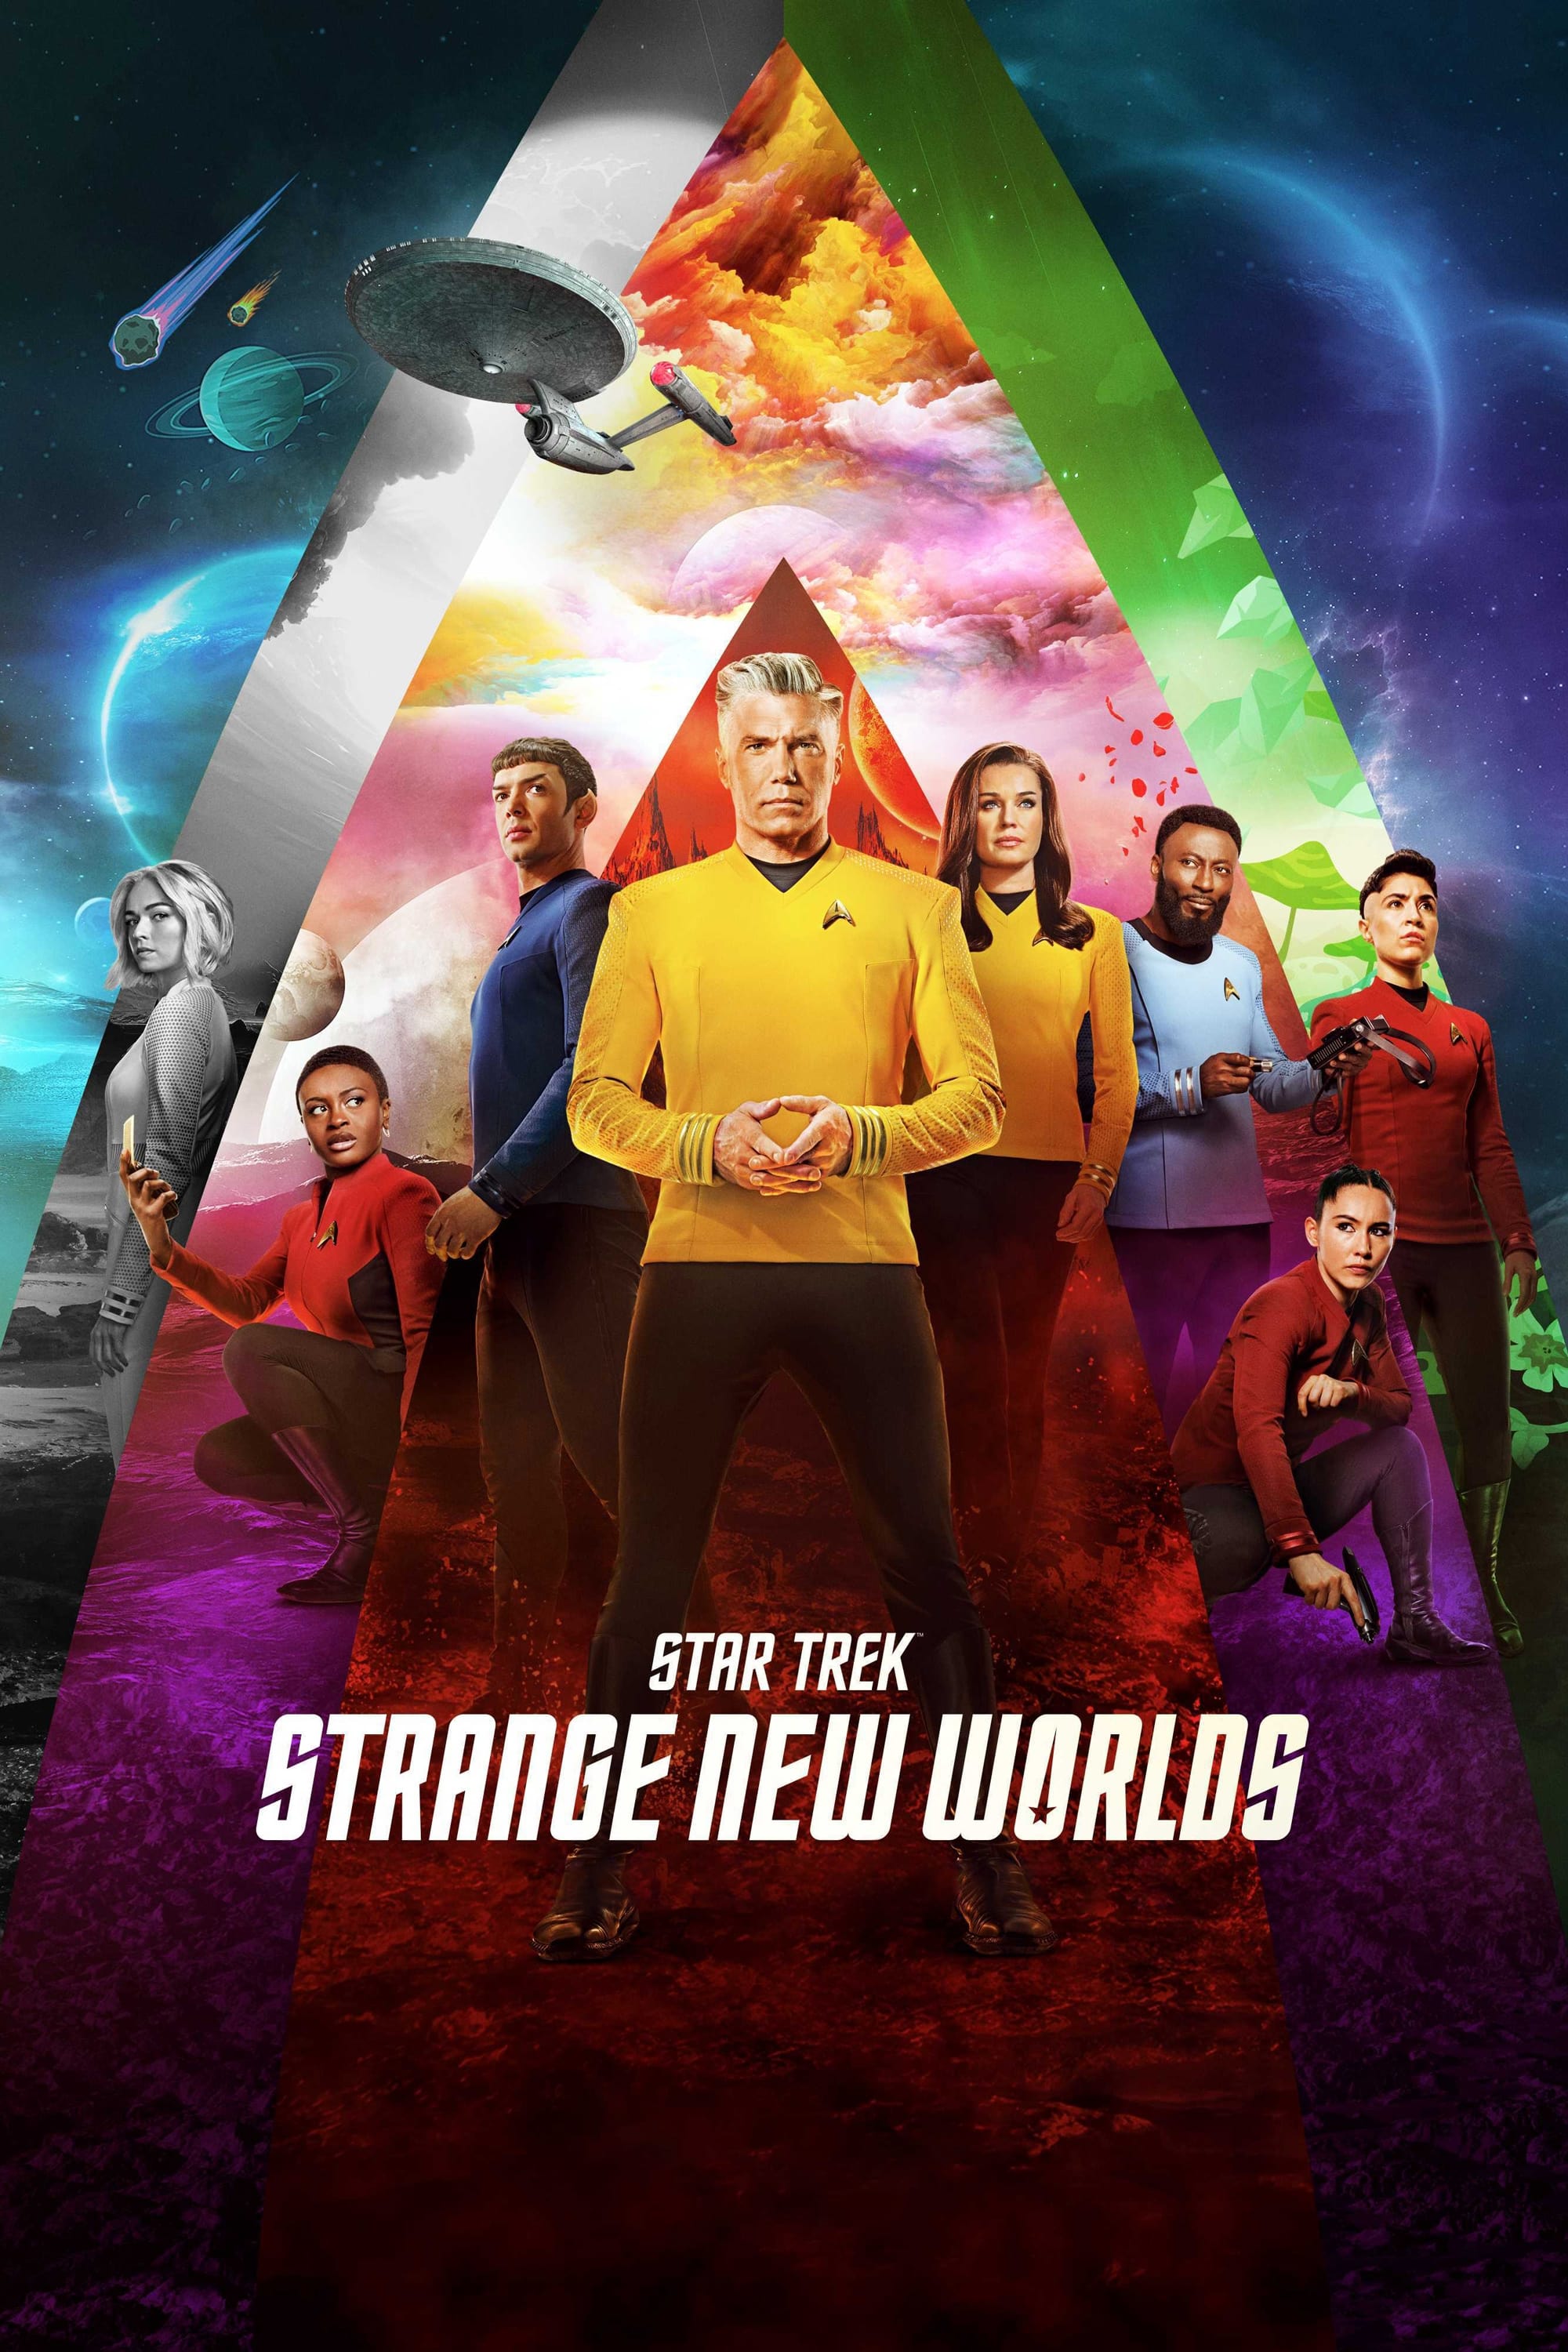 Star Trek: Strange New Worlds TV Shows About Prequel